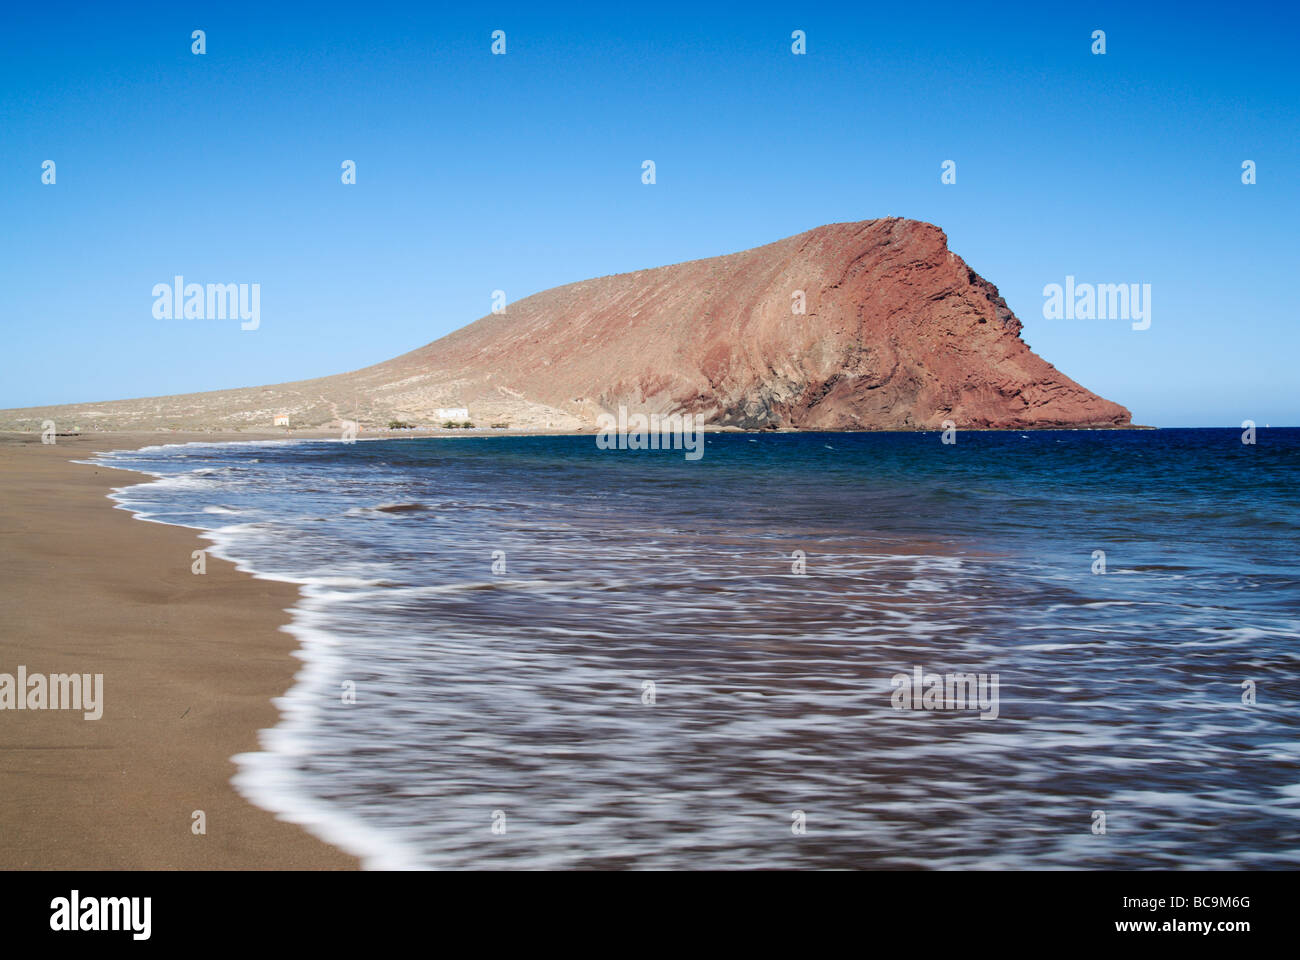 La plage de Tejita et Montaña Roja (red mountain) près de El Medano sur Ténérife dans les îles Canaries. Banque D'Images